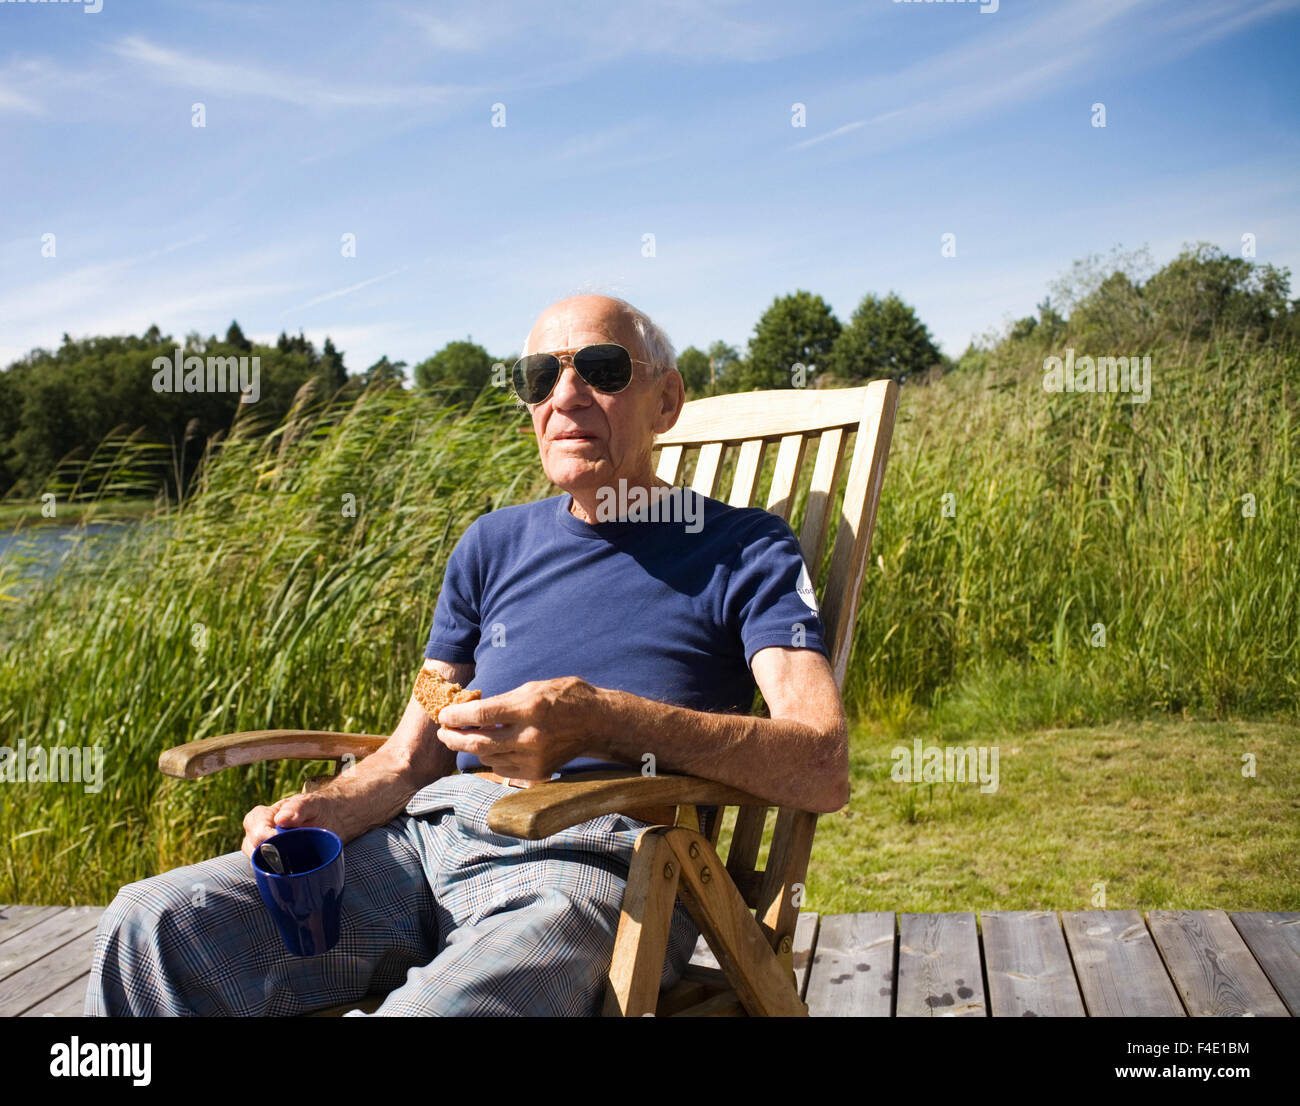 Un hombre viejo en una tumbona, Suecia. Foto de stock